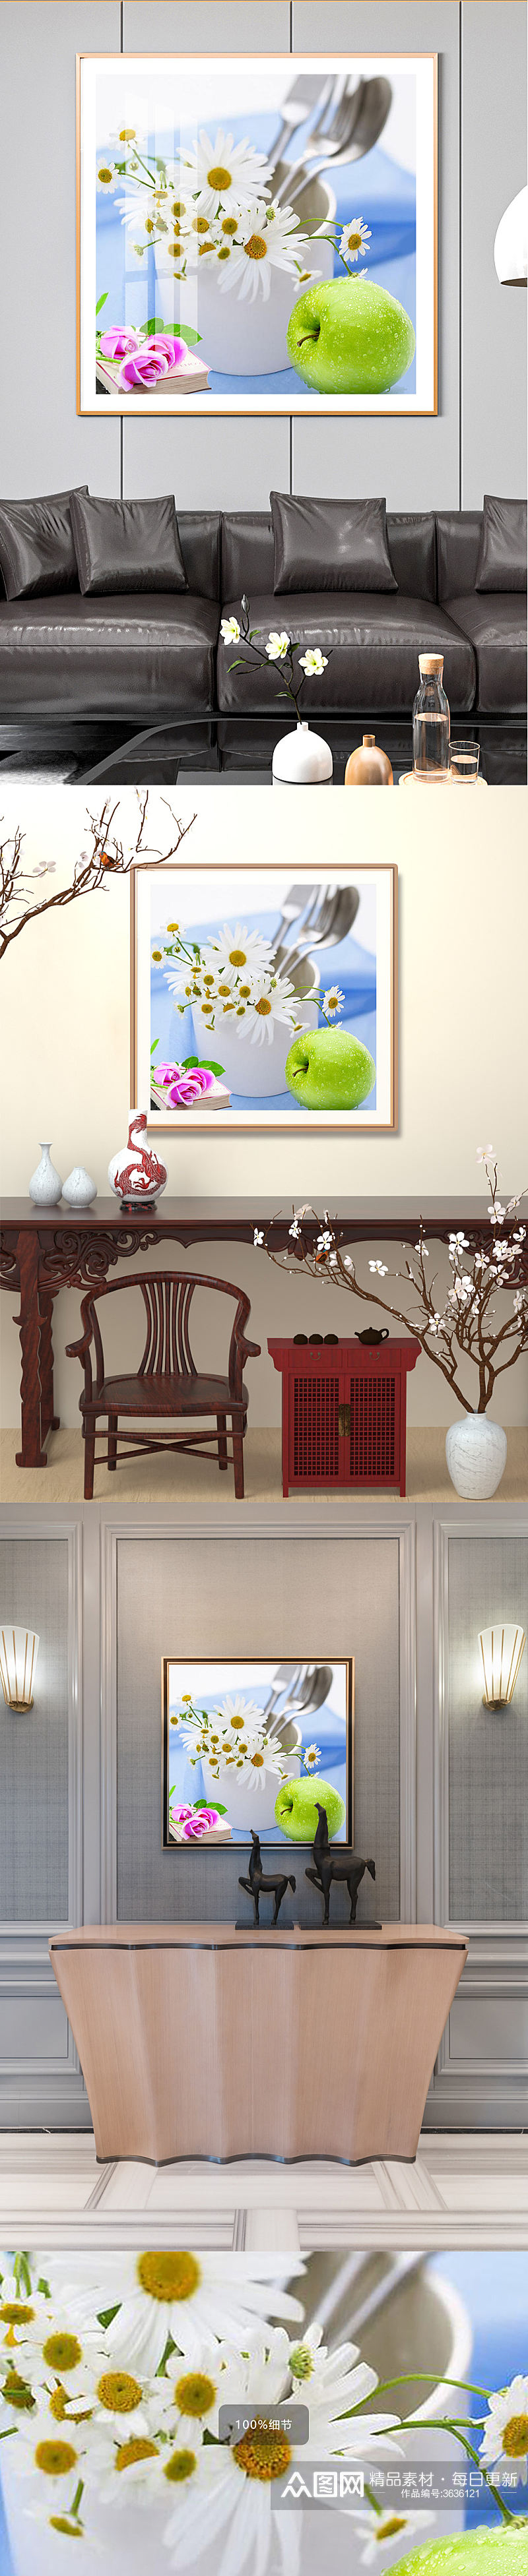 水果花卉餐具装饰画素材